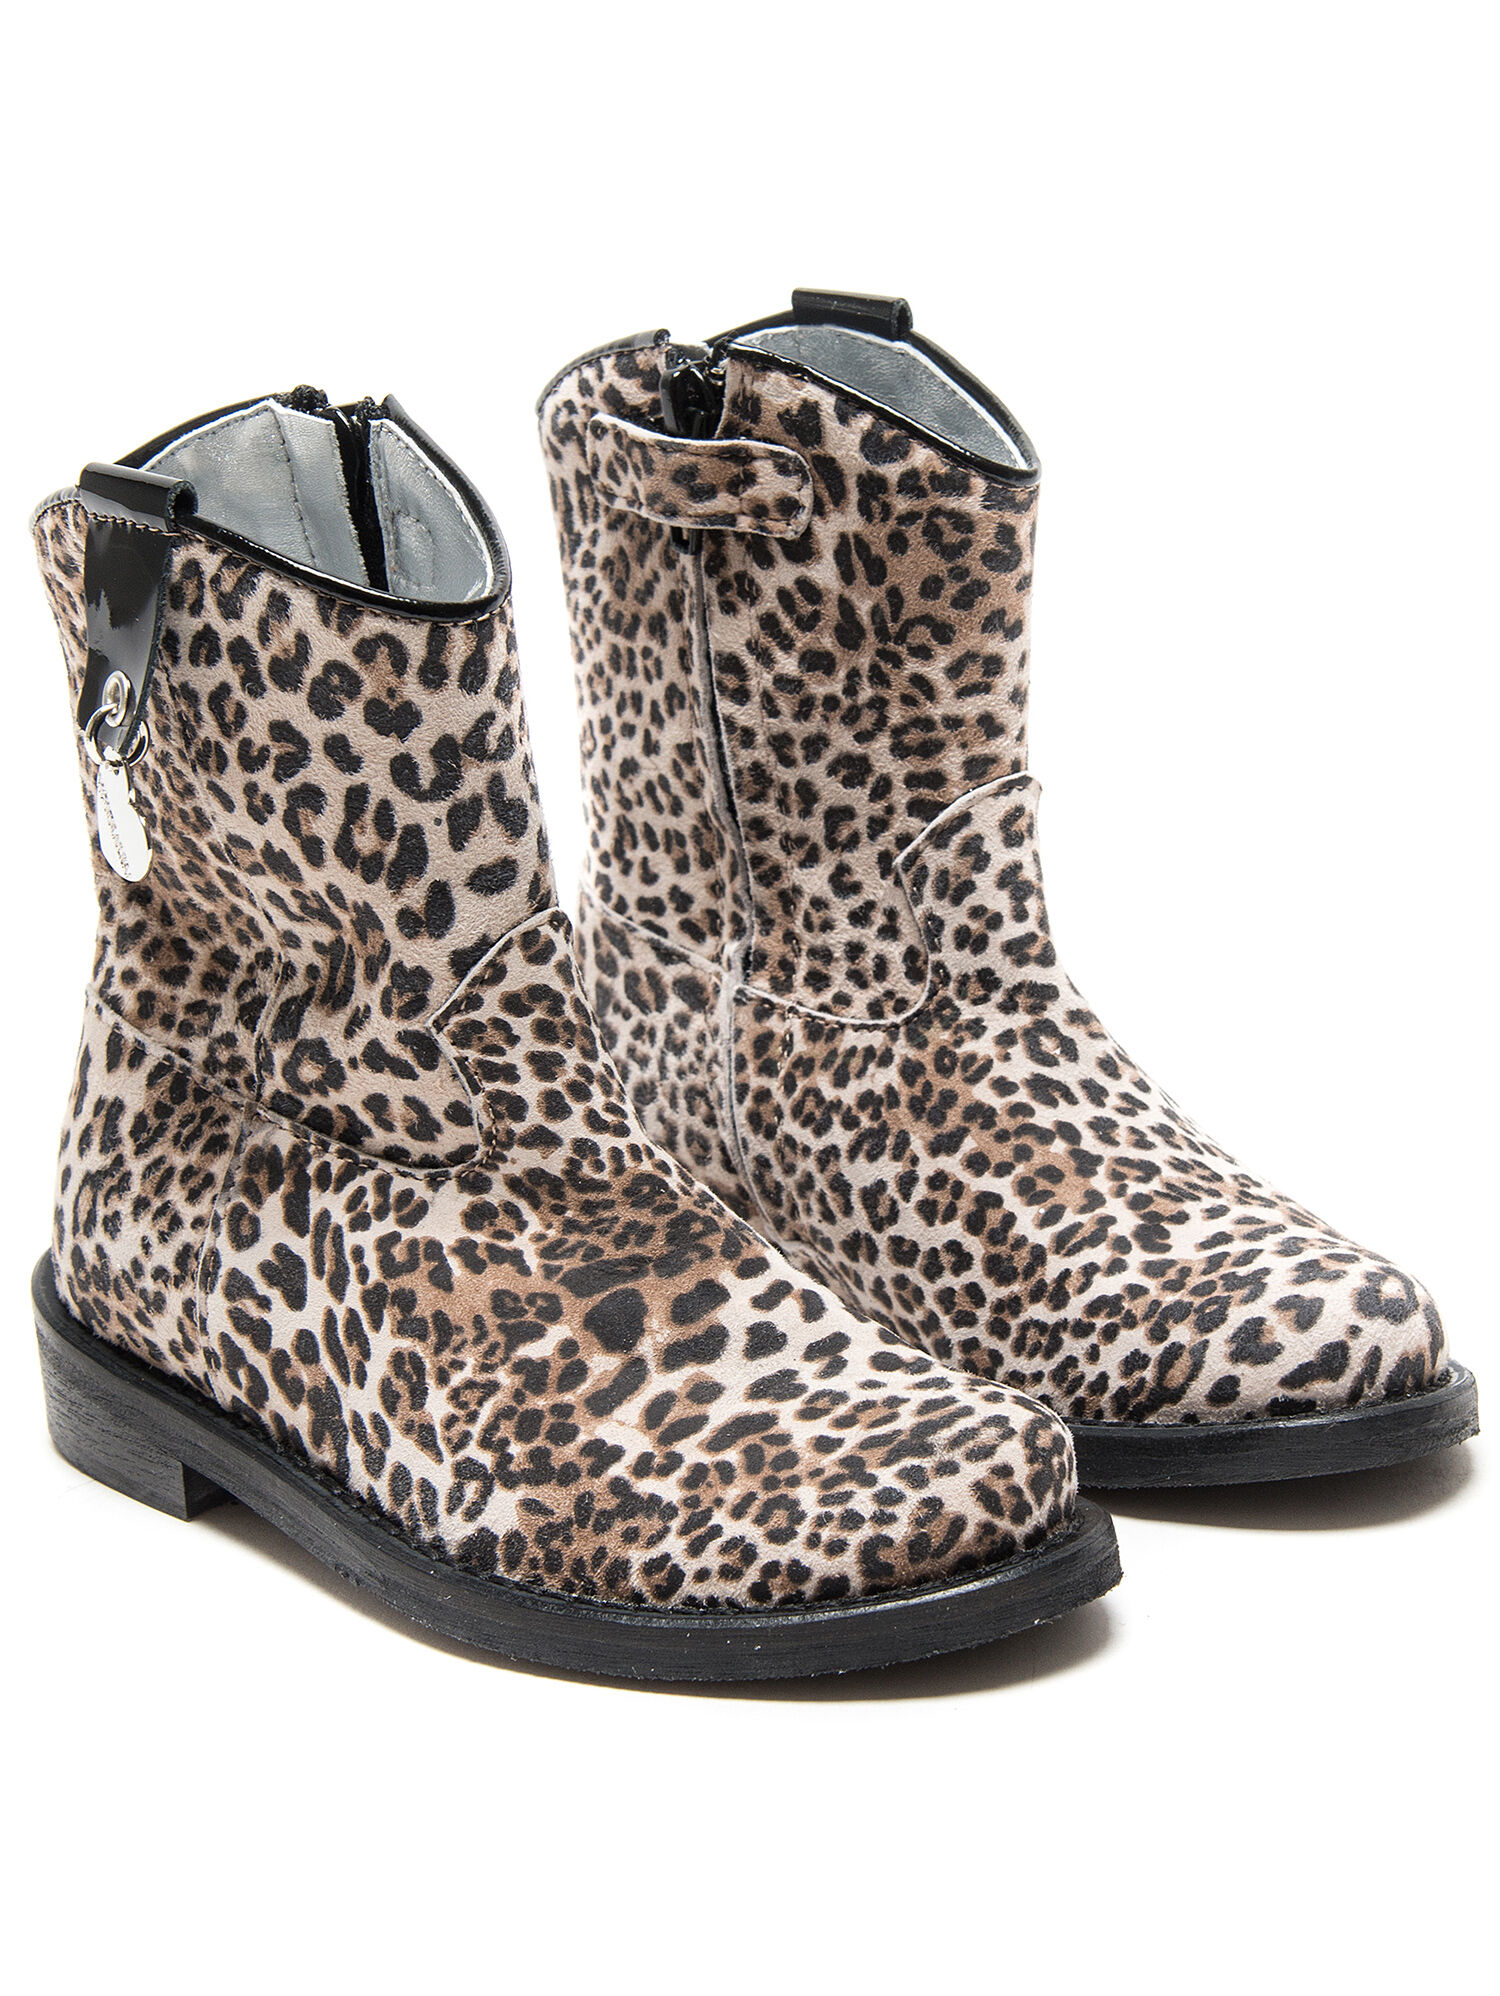 cowboy boots leopard print